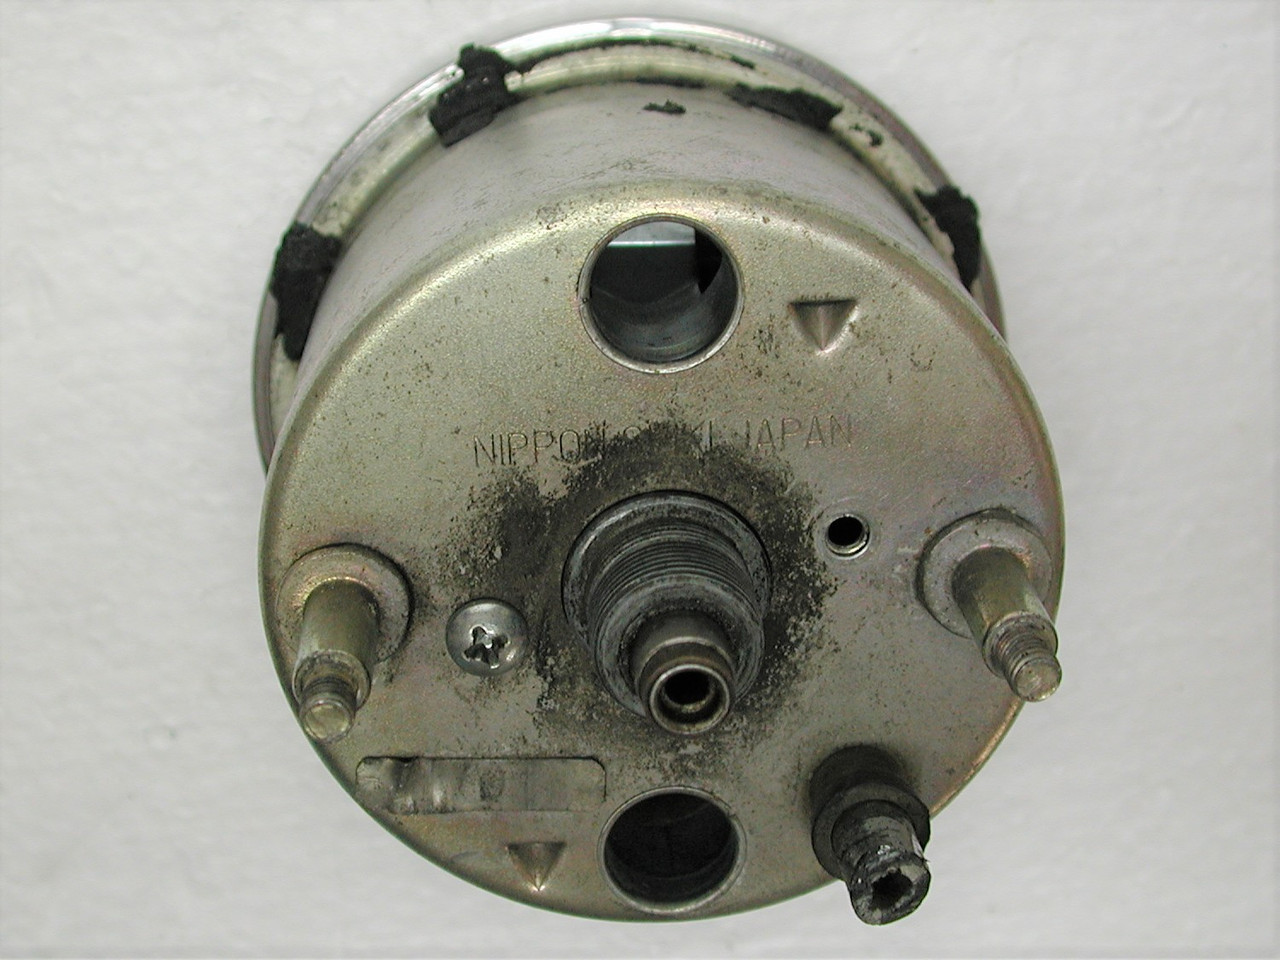 Vintage HARLEY DAVIDSON 3-1/2" Facing OEM Motorcycle Mechanical Speedometer